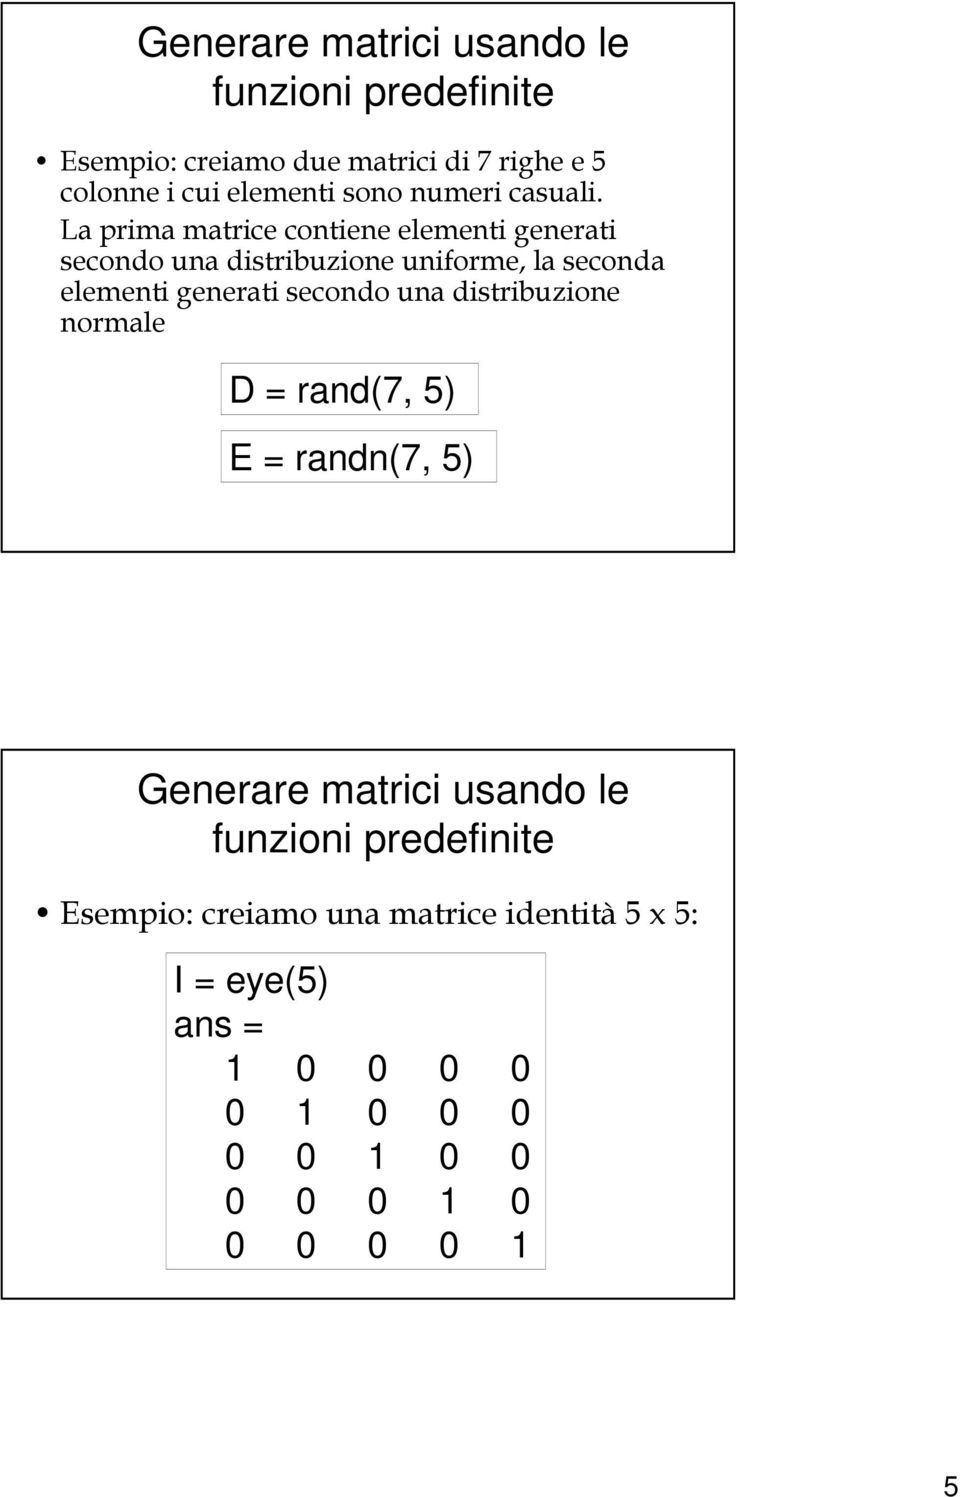 La prima matrice contiene elementi generati secondo una distribuzione uniforme, la seconda elementi